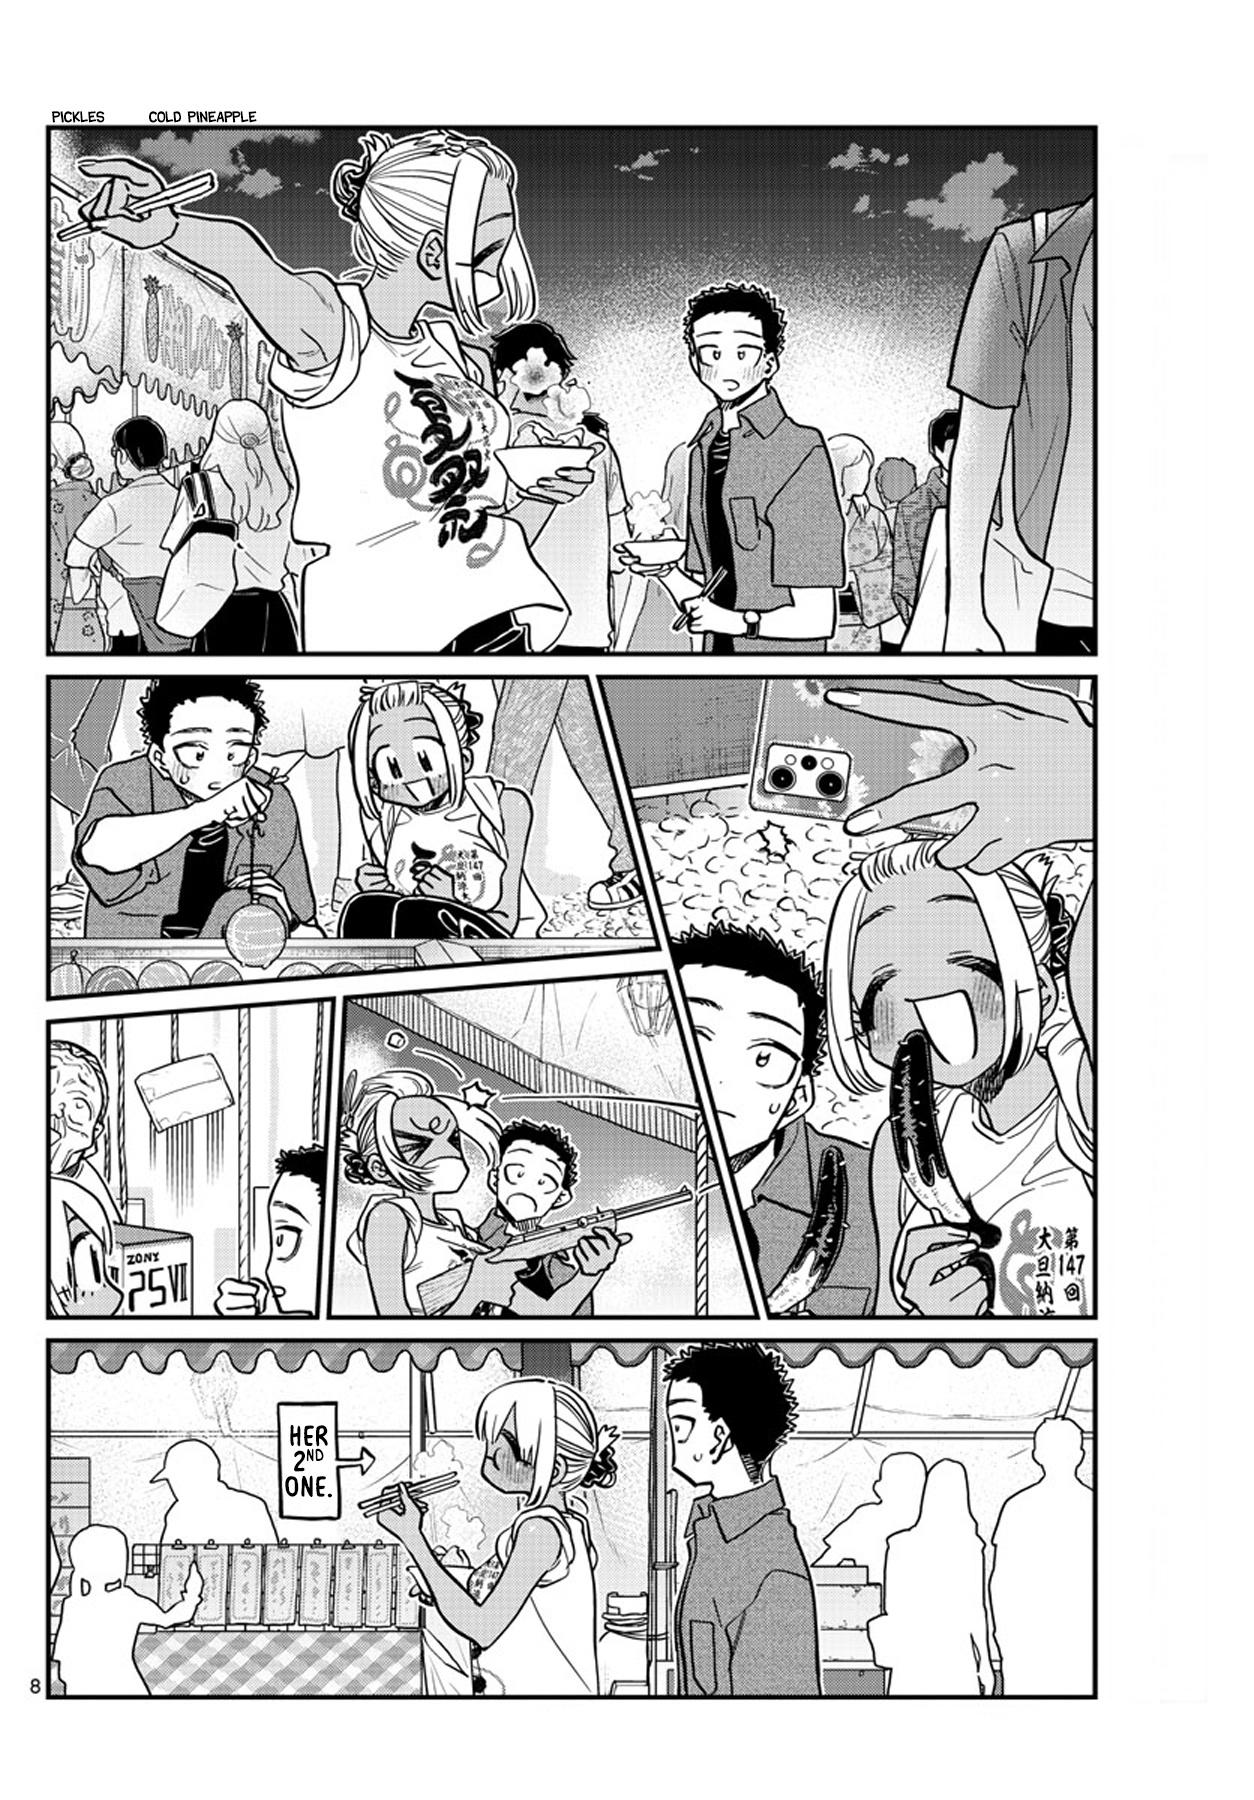 Komi-san wa Komyusho desu Ch.401 Page 8 - Mangago